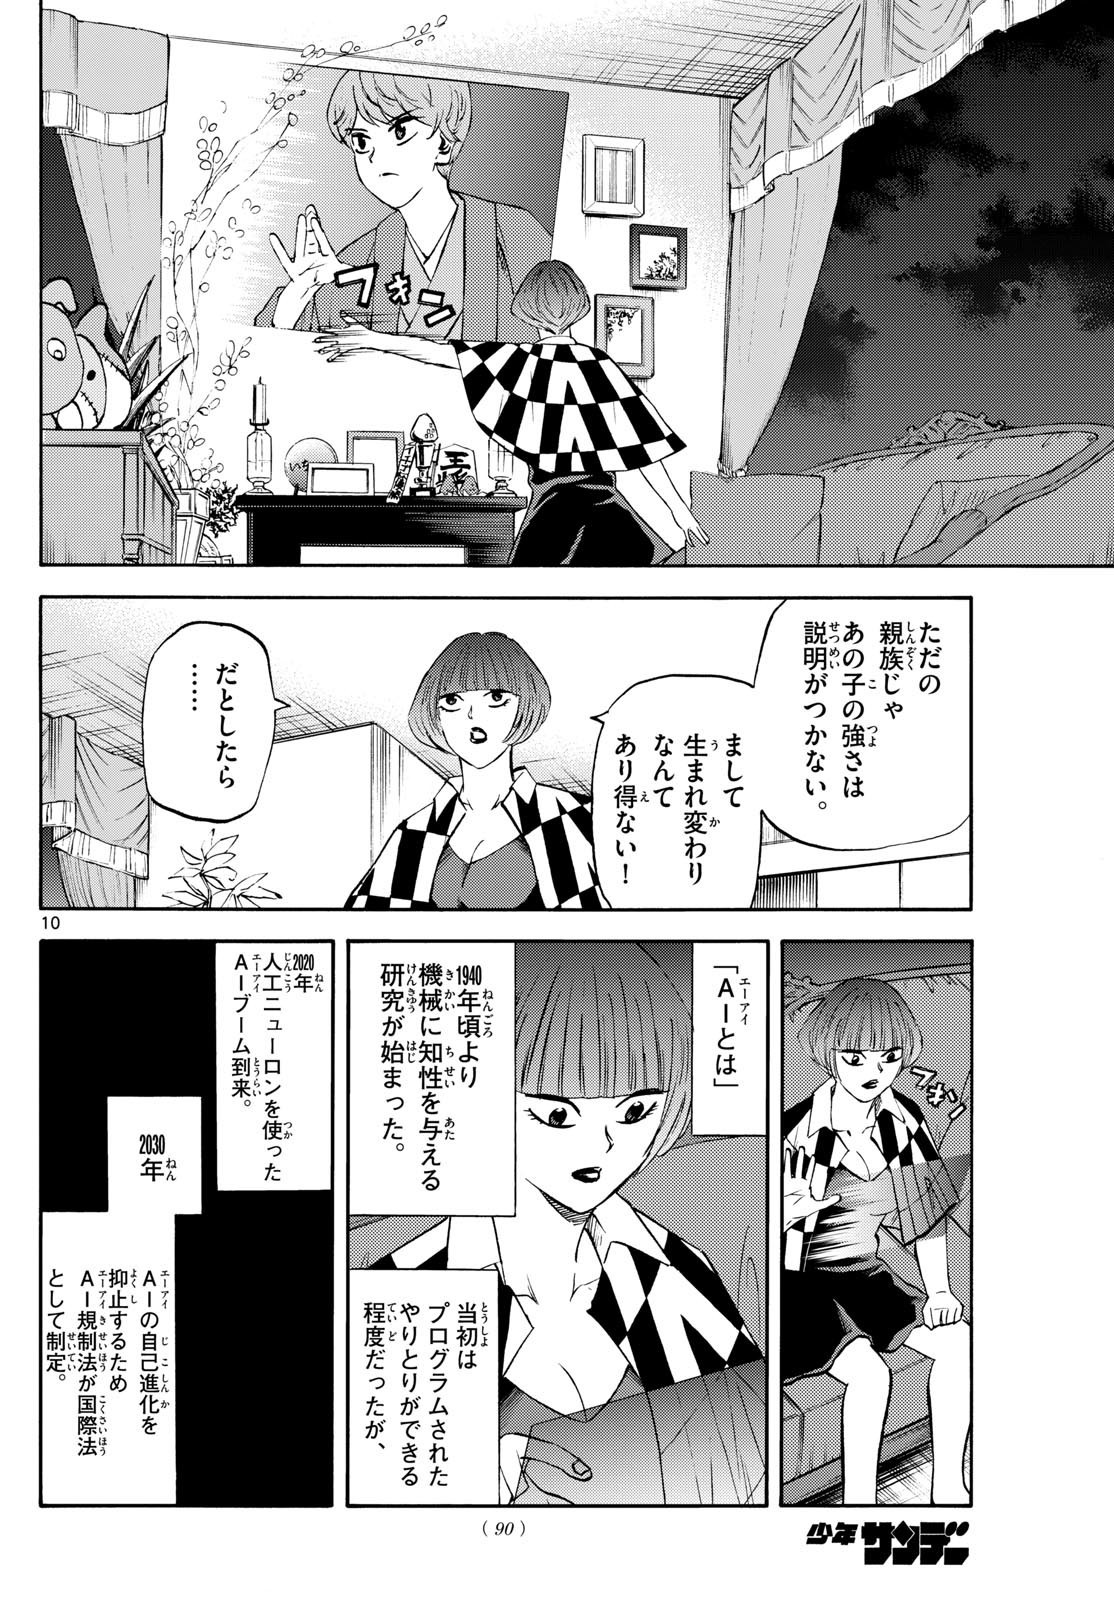 Tatsu to Ichigo - Chapter 199 - Page 10